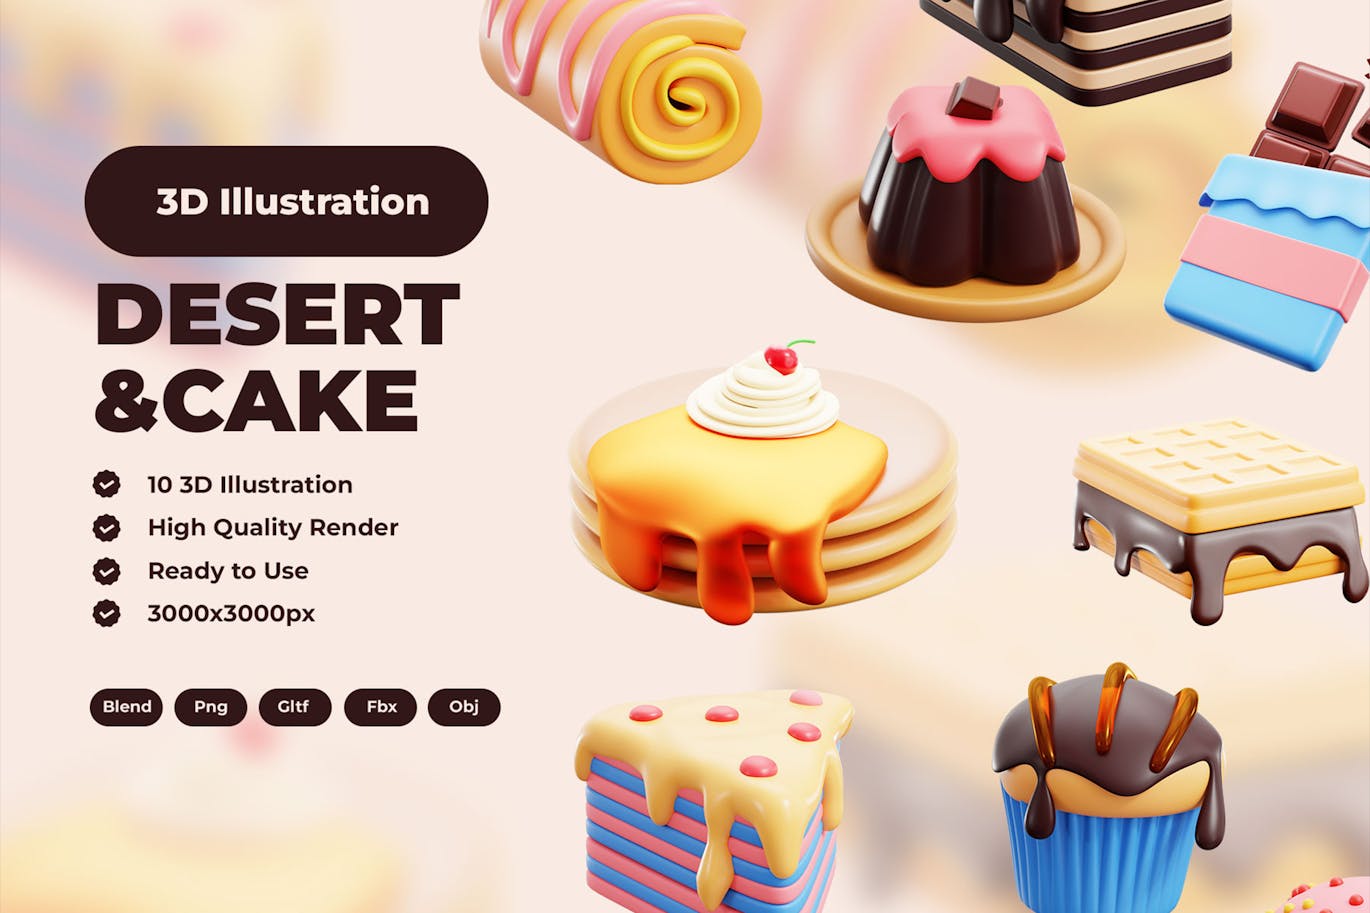 甜点和蛋糕 3D 插图 (PNG,FBX,OBJ,GLTF)